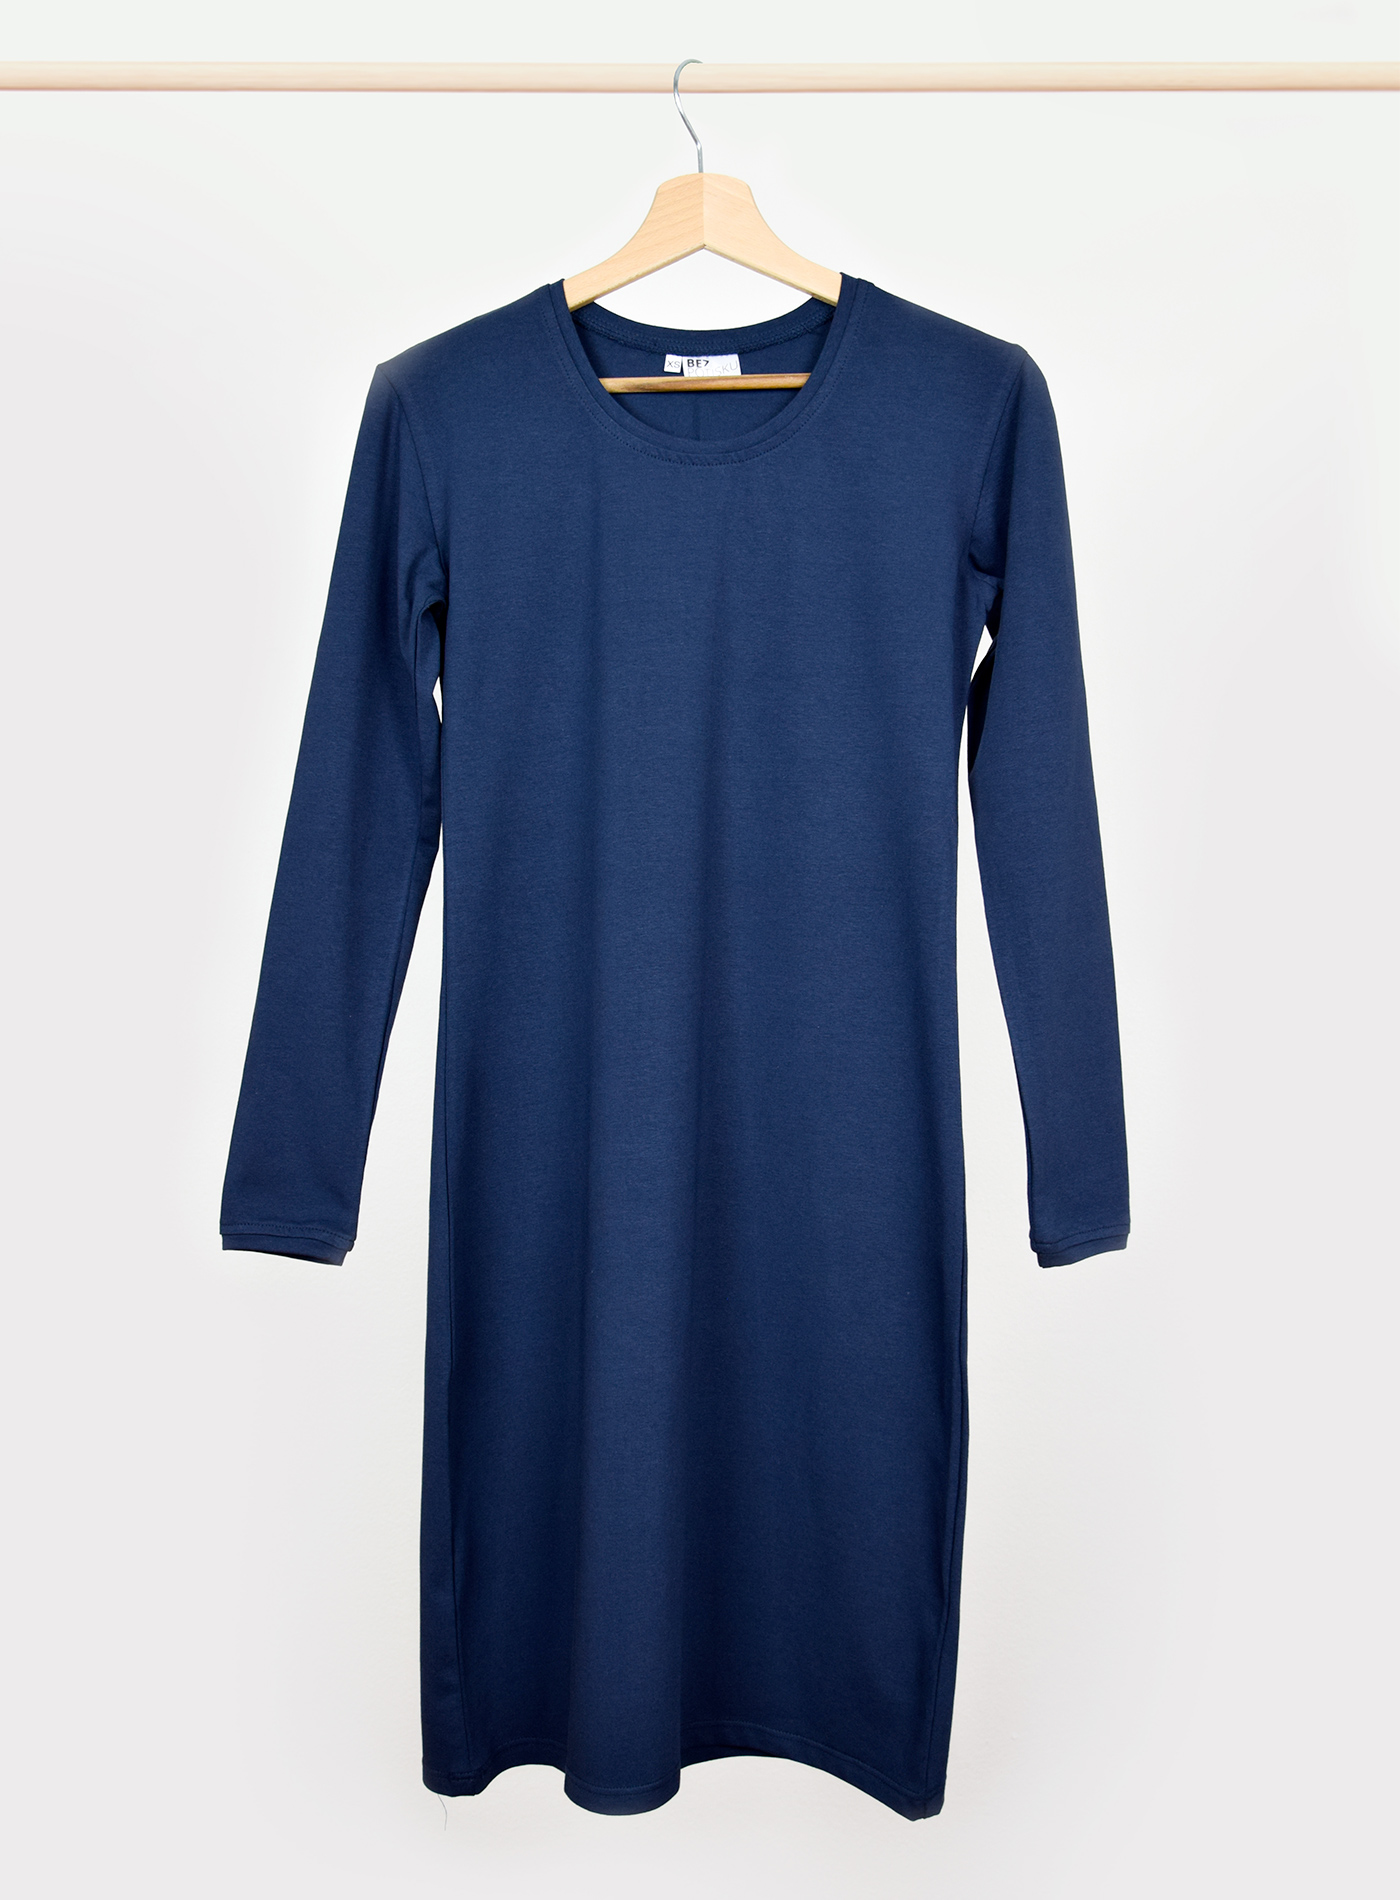 Dámské šaty s dlouhým rukávem BezPotisku Veronika - tmavě modrá XL